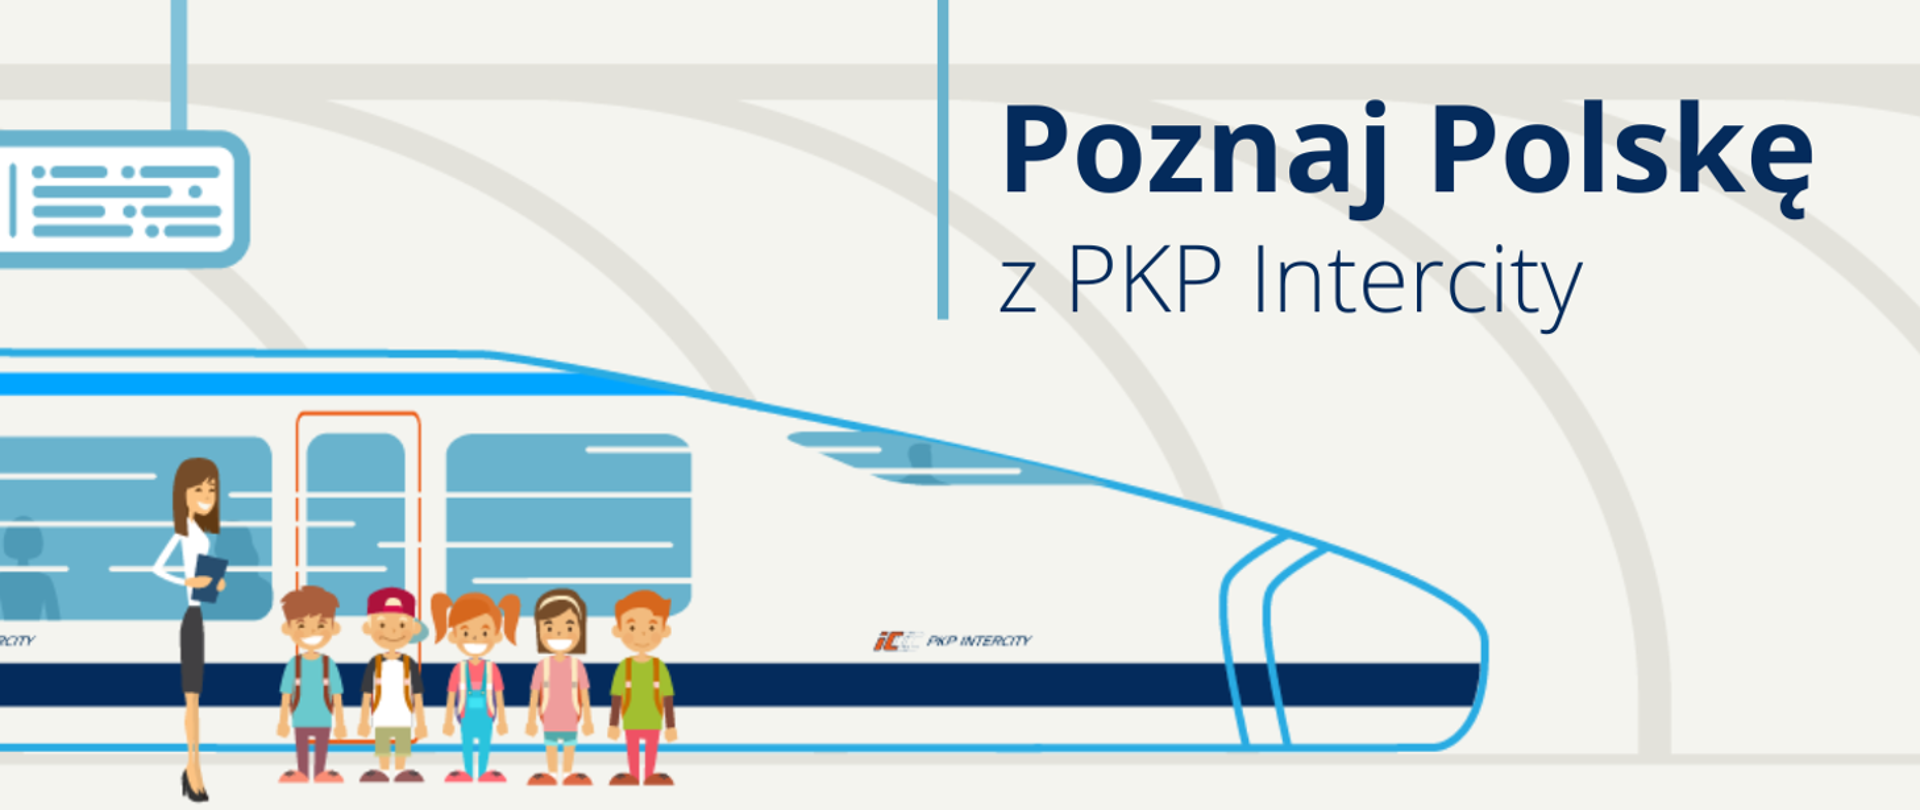 Poznaj Polskę z PKP Intercity – zapraszamy do udziału w konkursie